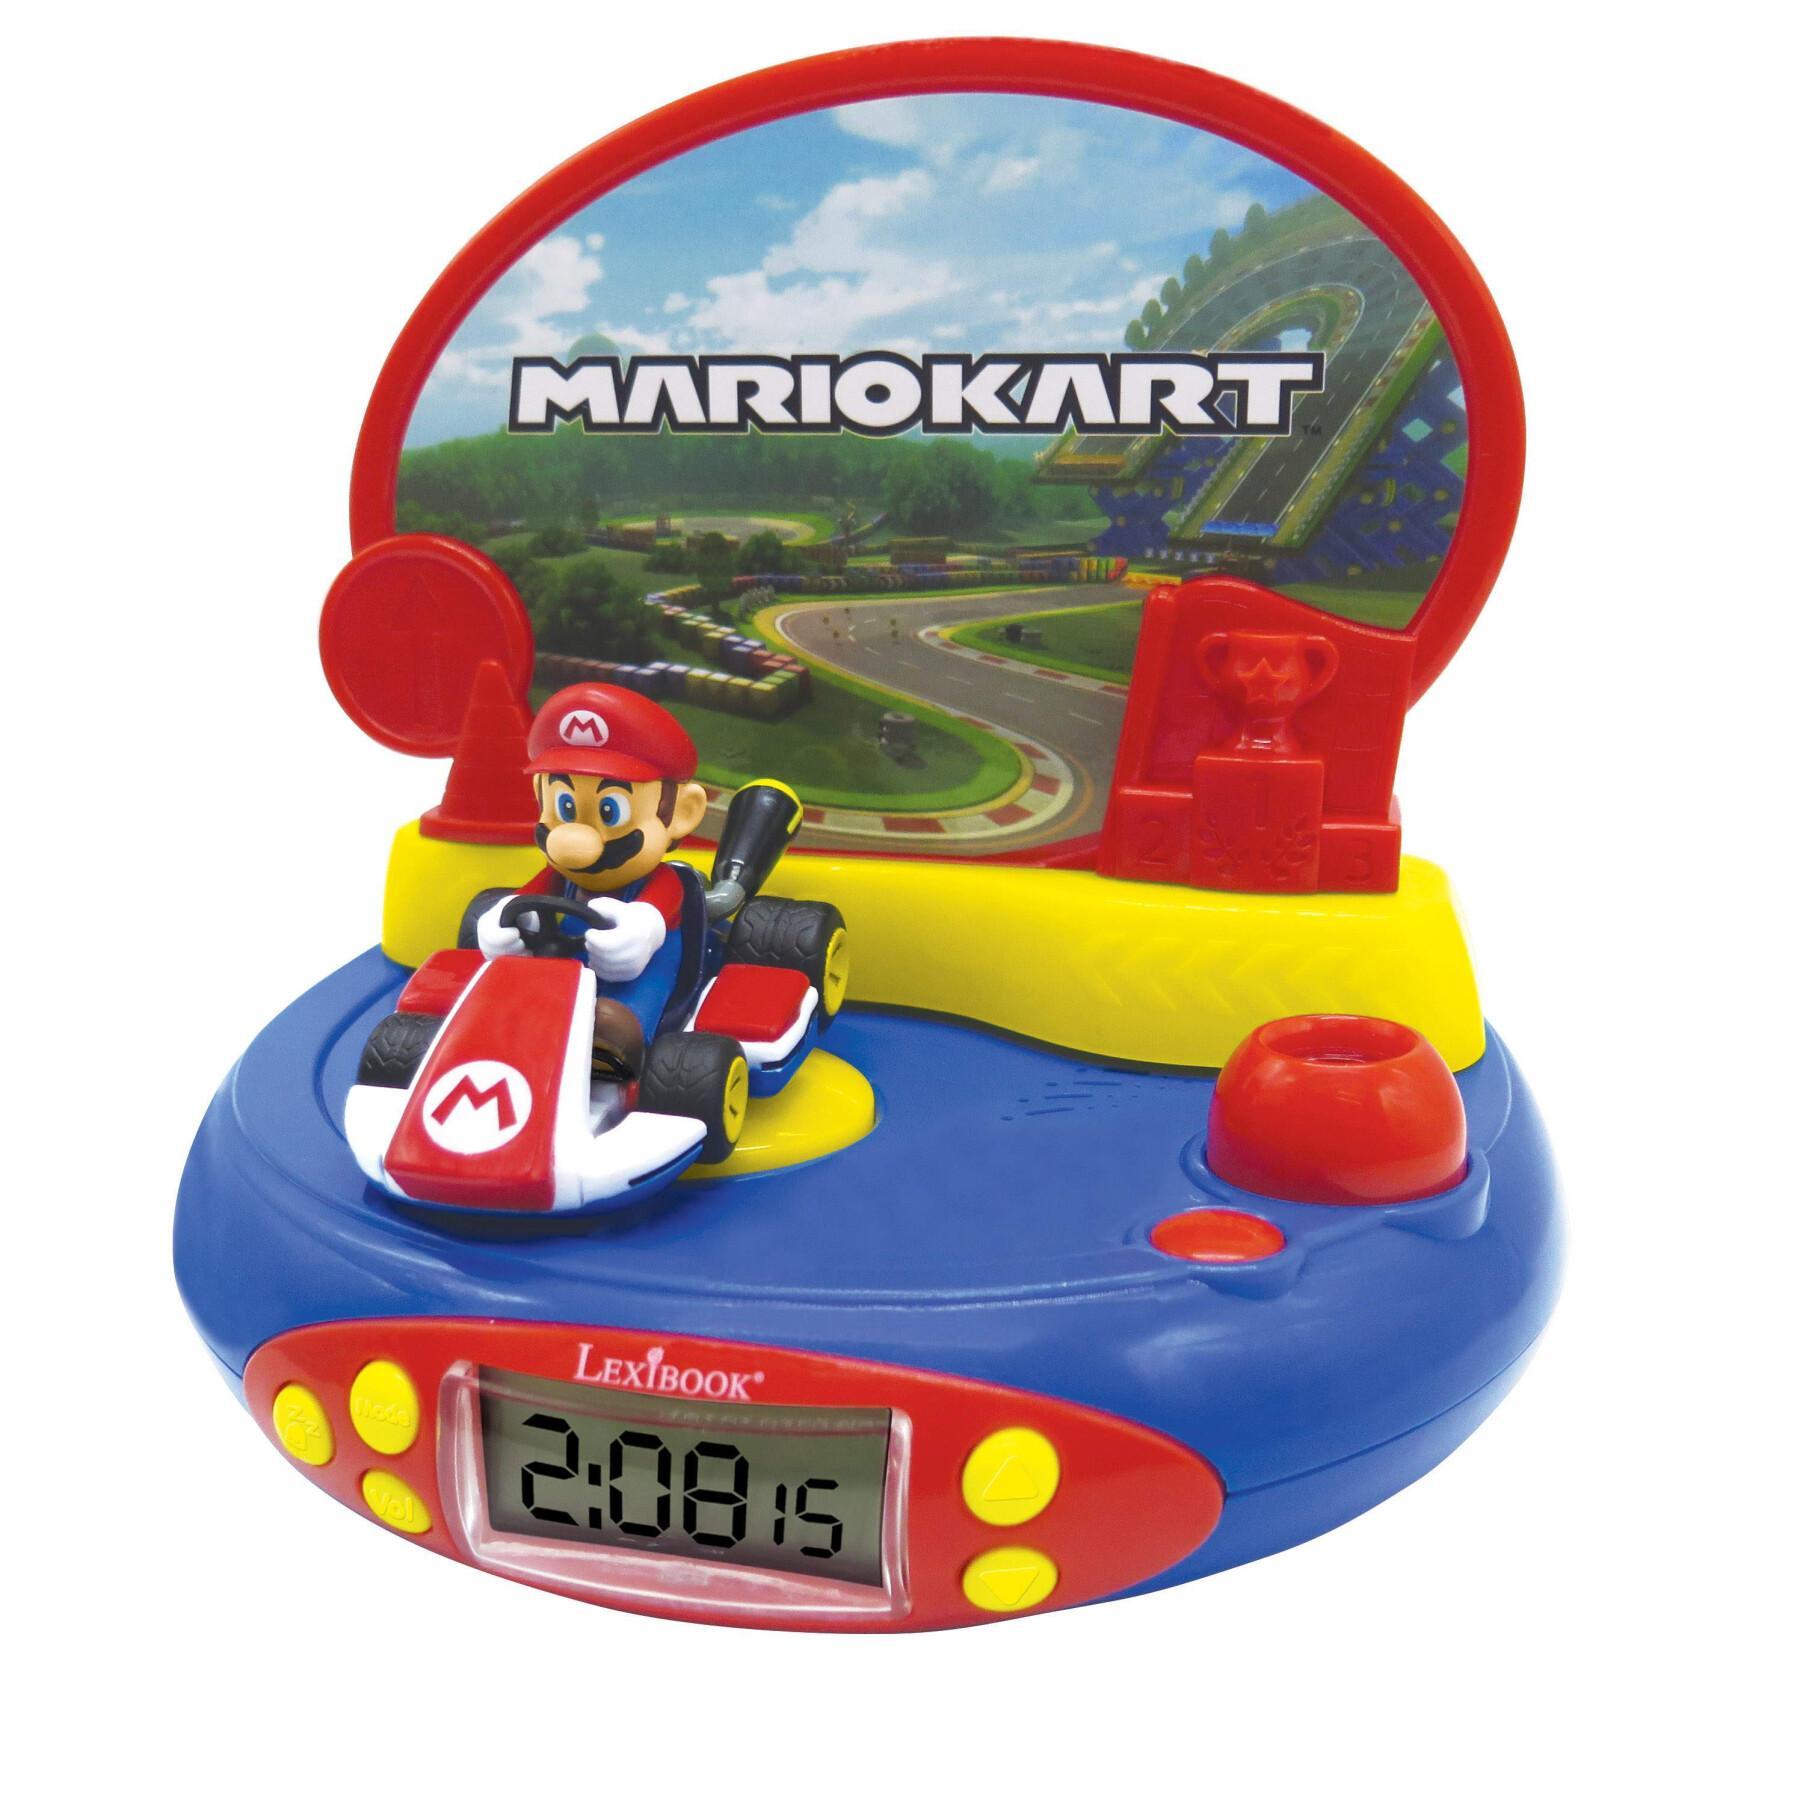 Sveglia con proiettore Nintendo con Mario Kart in 3D e suoni di videogiochi Lexibook